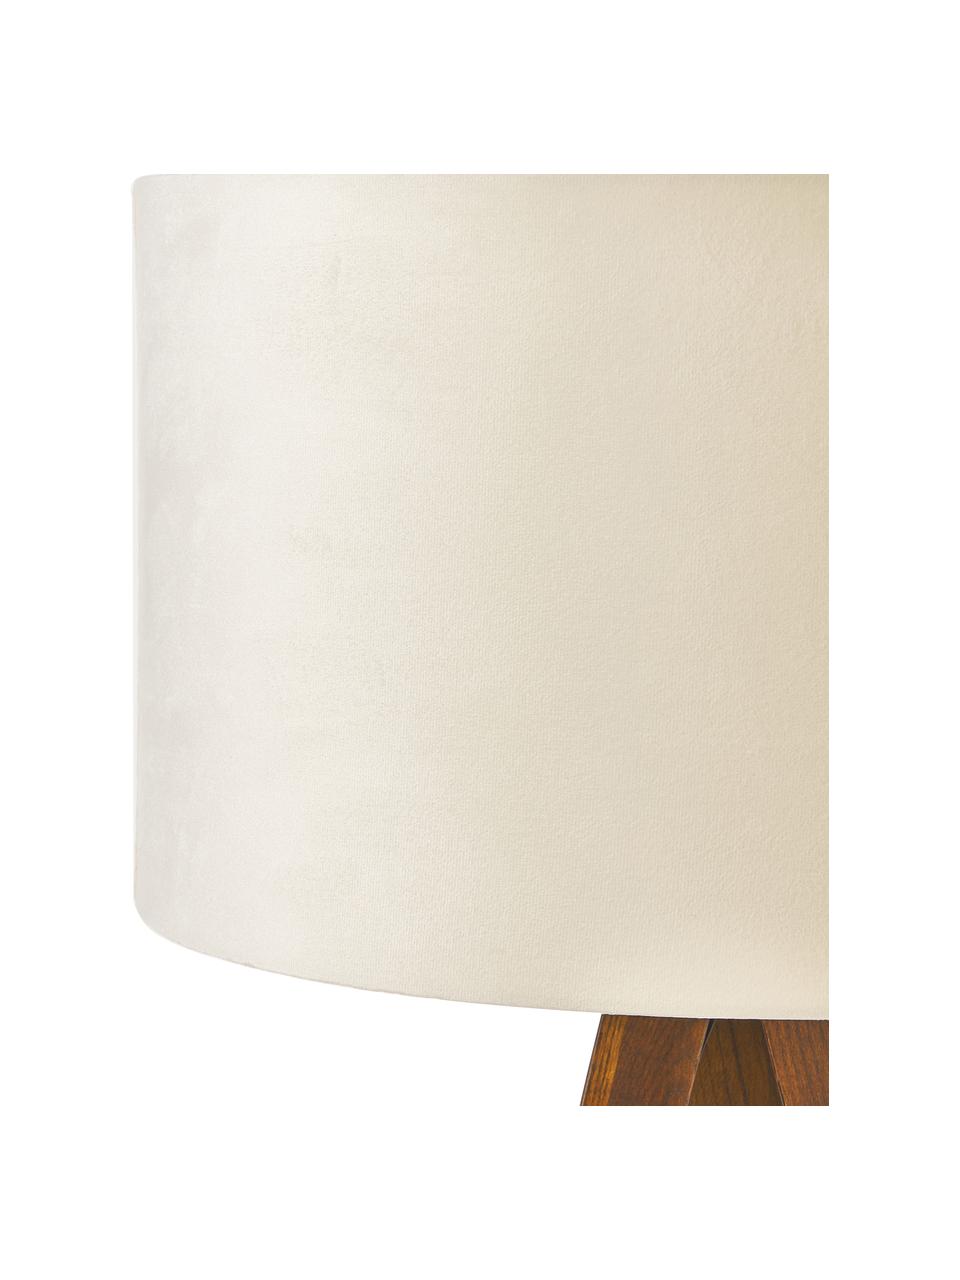 Skandi-Tripod Stehlampe Jake aus Massivholz mit Samt-Schirm, Lampenschirm: Samt, Off White, Braun, H 150 cm